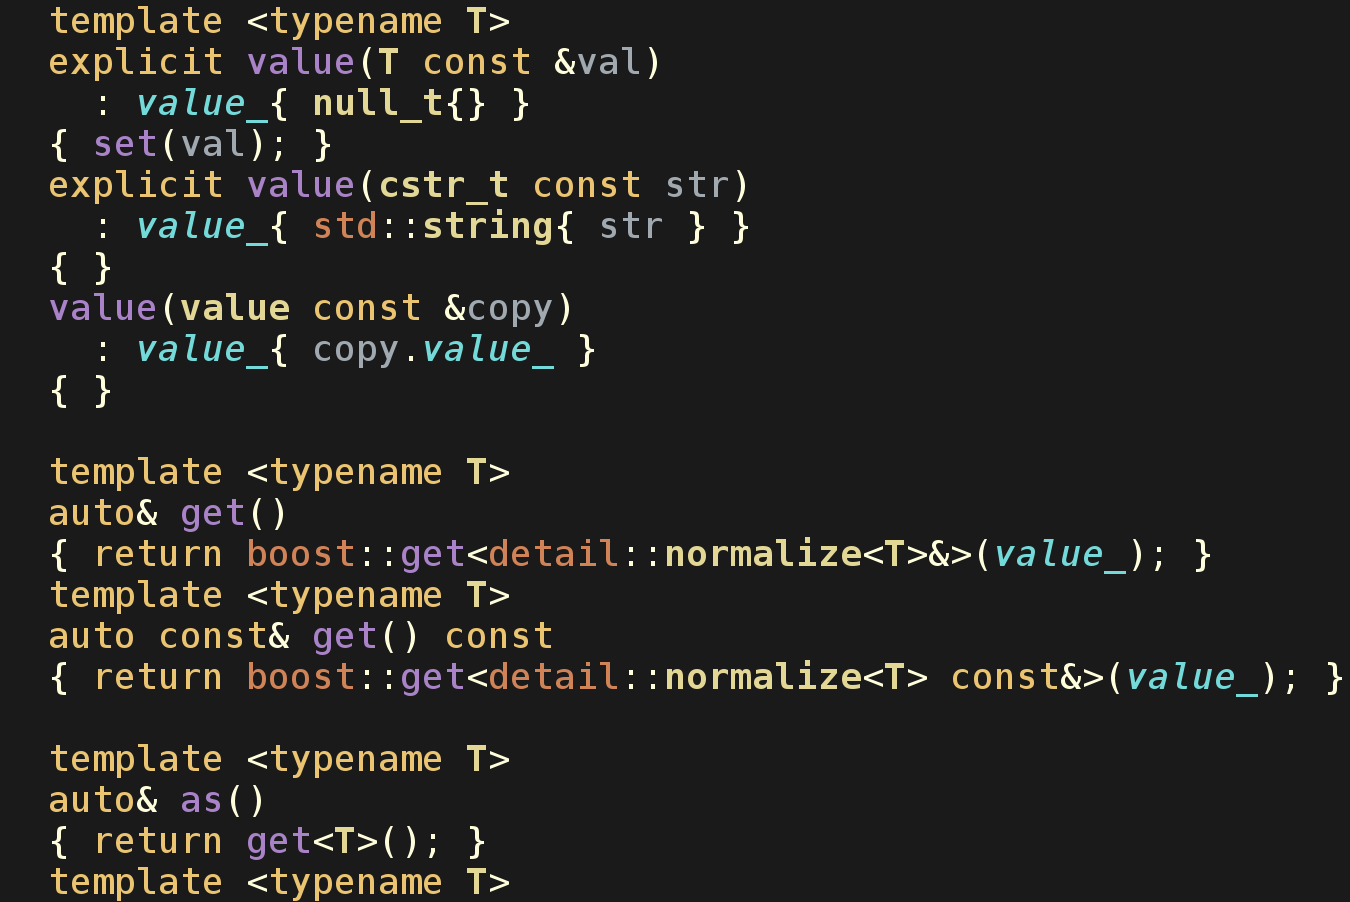 Код проду. C++ код. Программный код c++. C++ пример кода. Программирование с++.